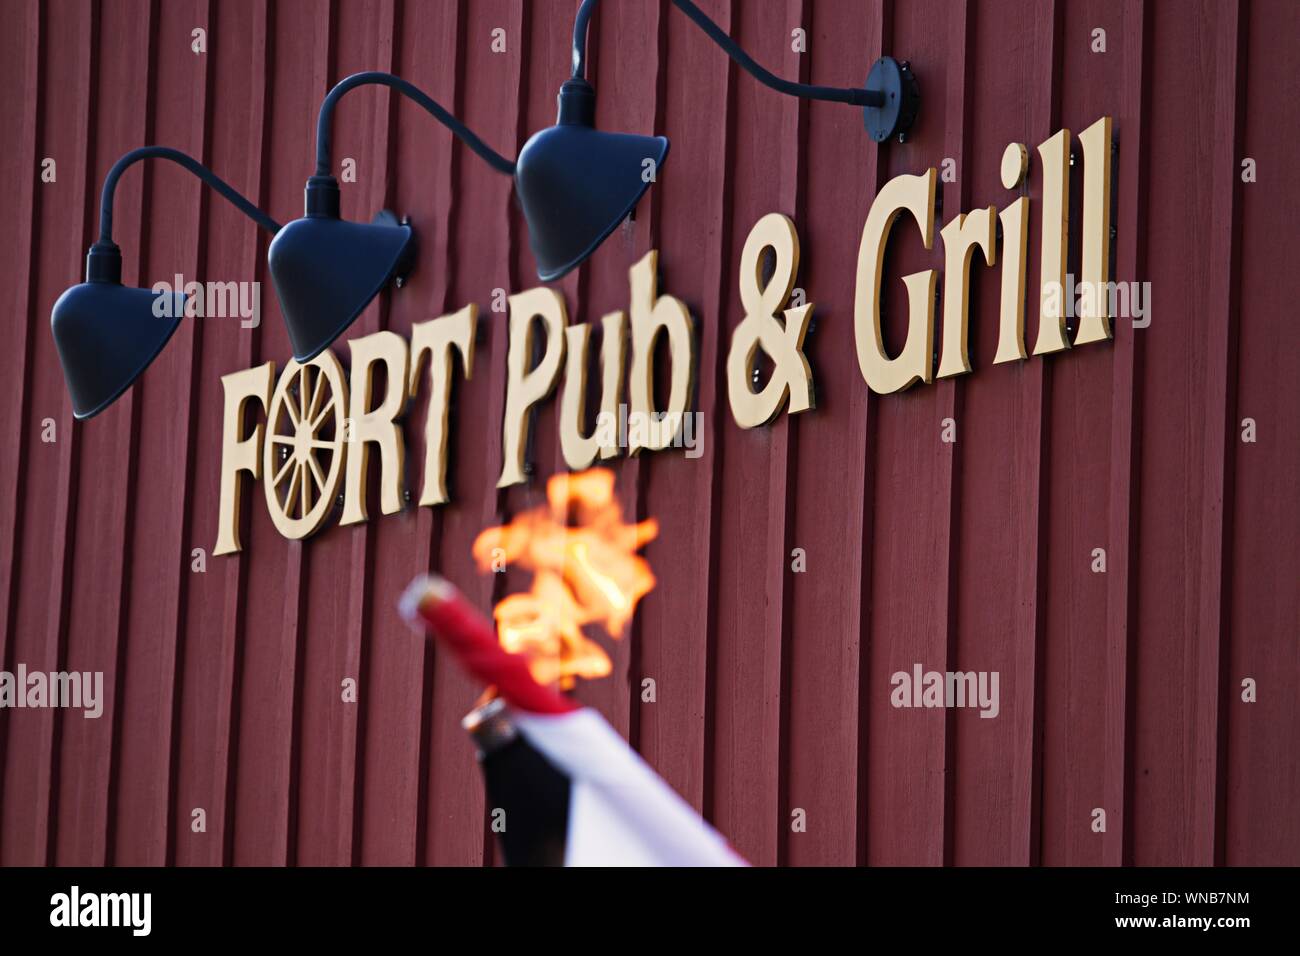 Fort Pub & Grill Banque D'Images